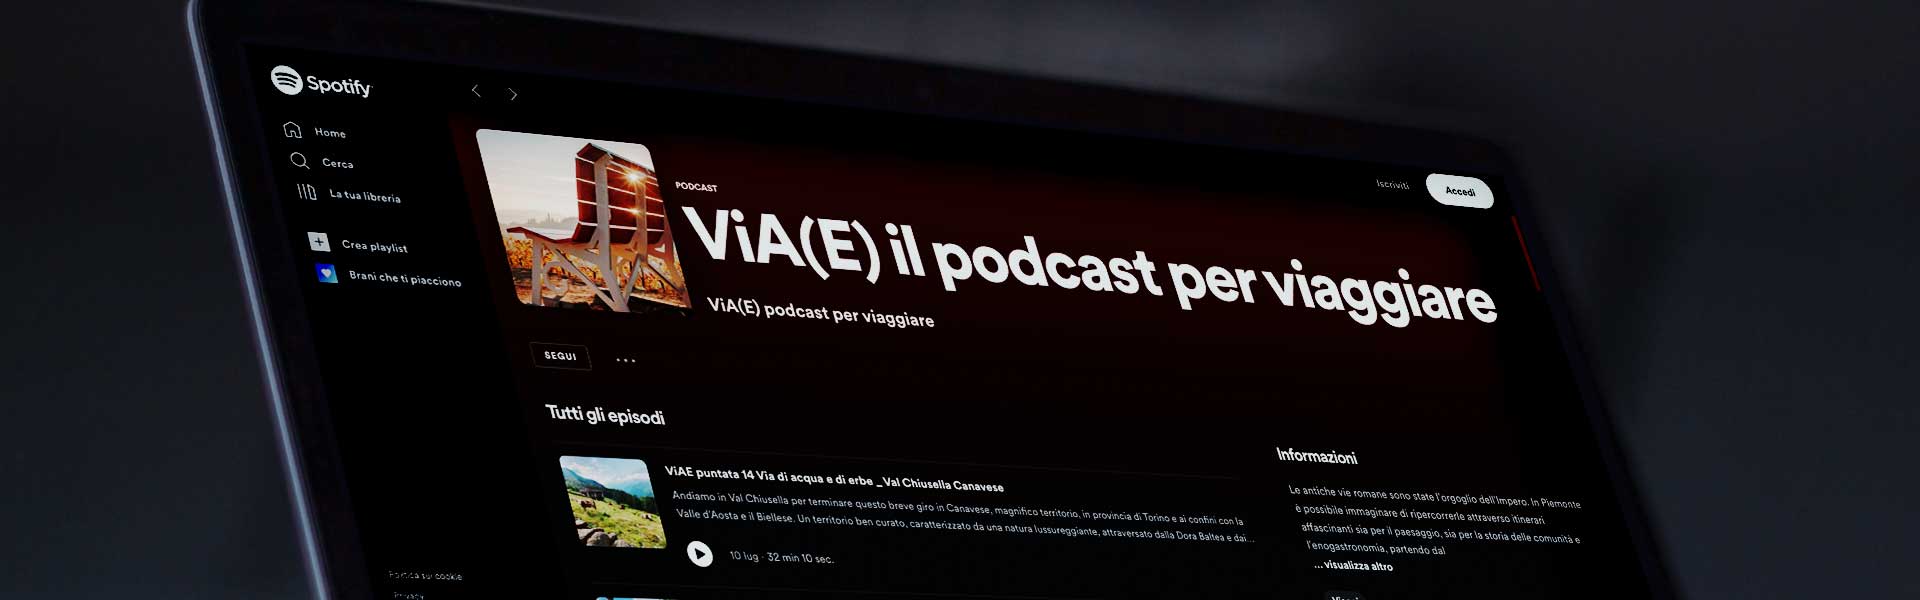 ViA(E) il podcast per viaggiare